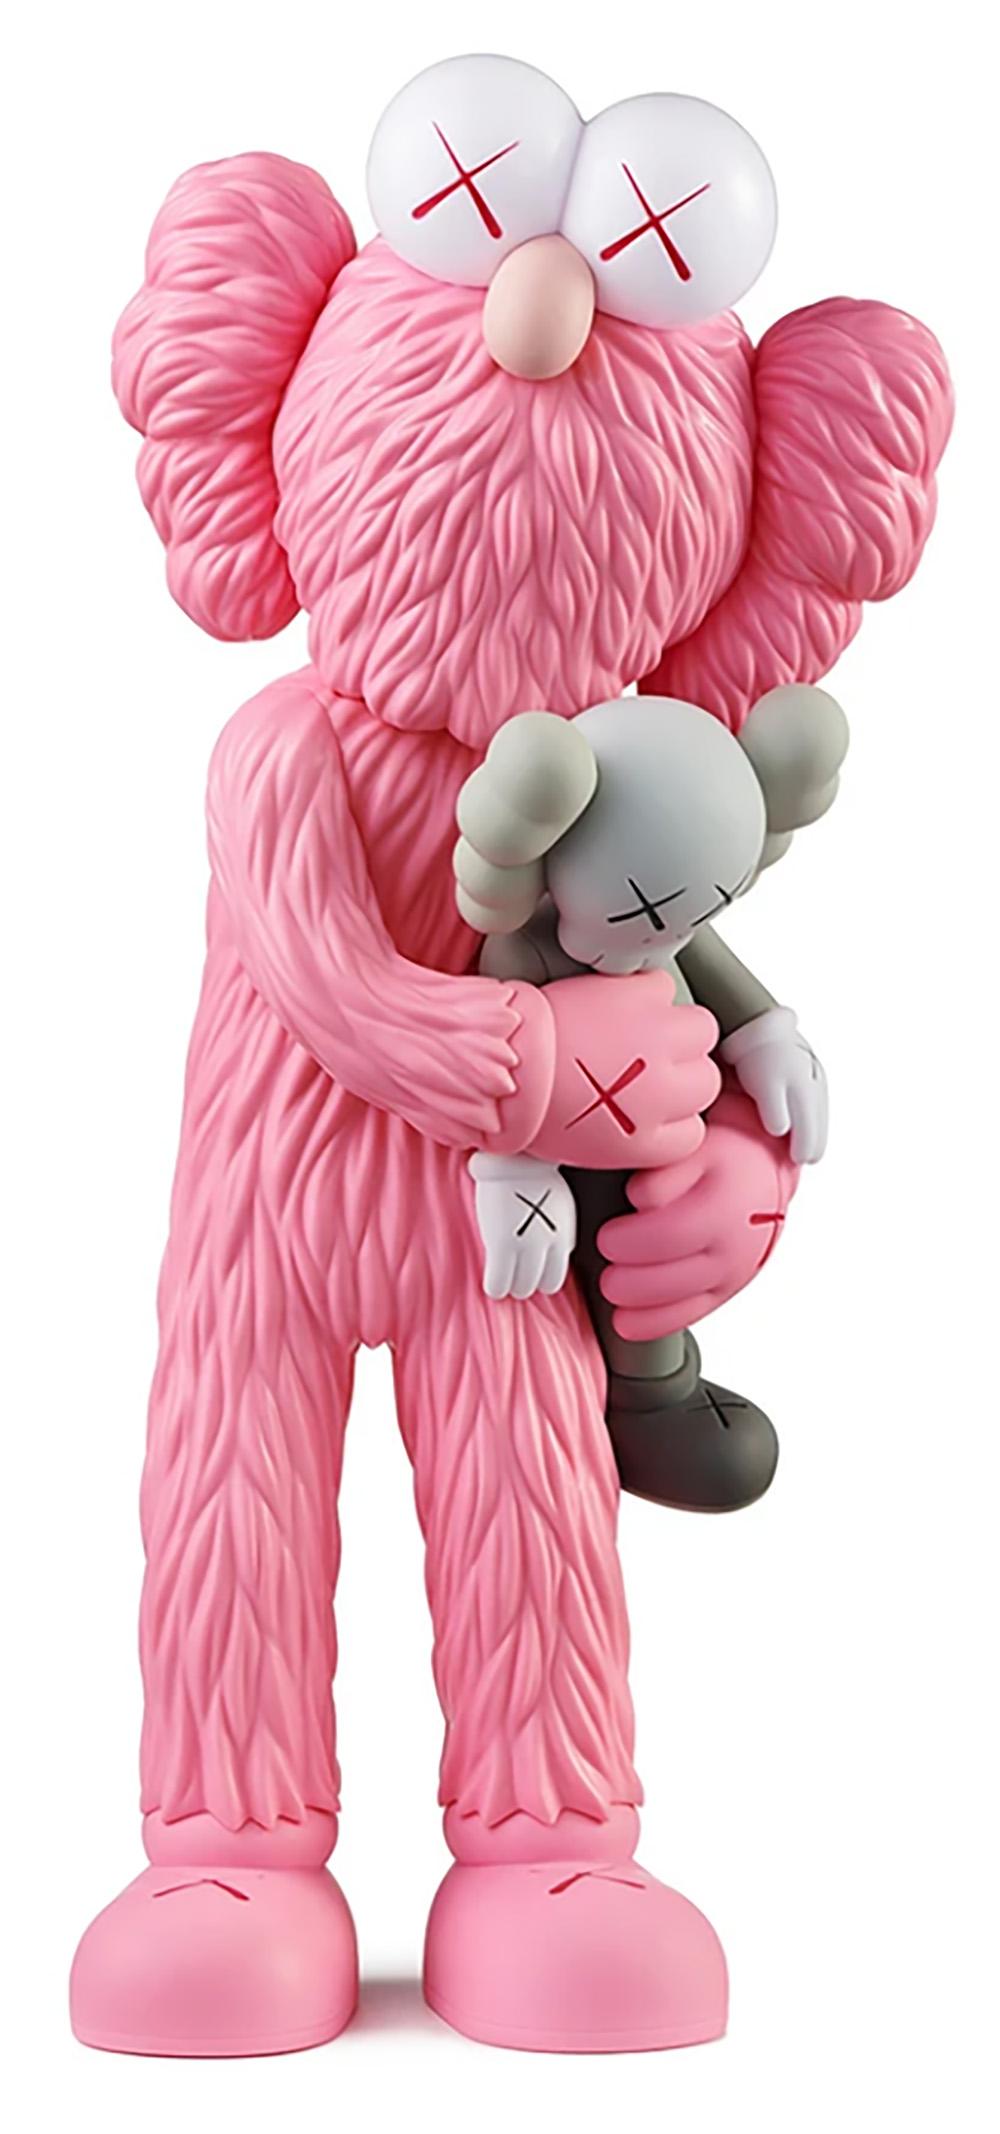 KAWS TAKE (Pink) sculpture figurative neuf & non ouvert dans son emballage d'origine. 
Une œuvre bien accueillie et une variation de la sculpture TAKE à grande échelle de KAWS - un point fort de l'exposition, 'KAWS BLACKOUT à la Skarstedt Gallery